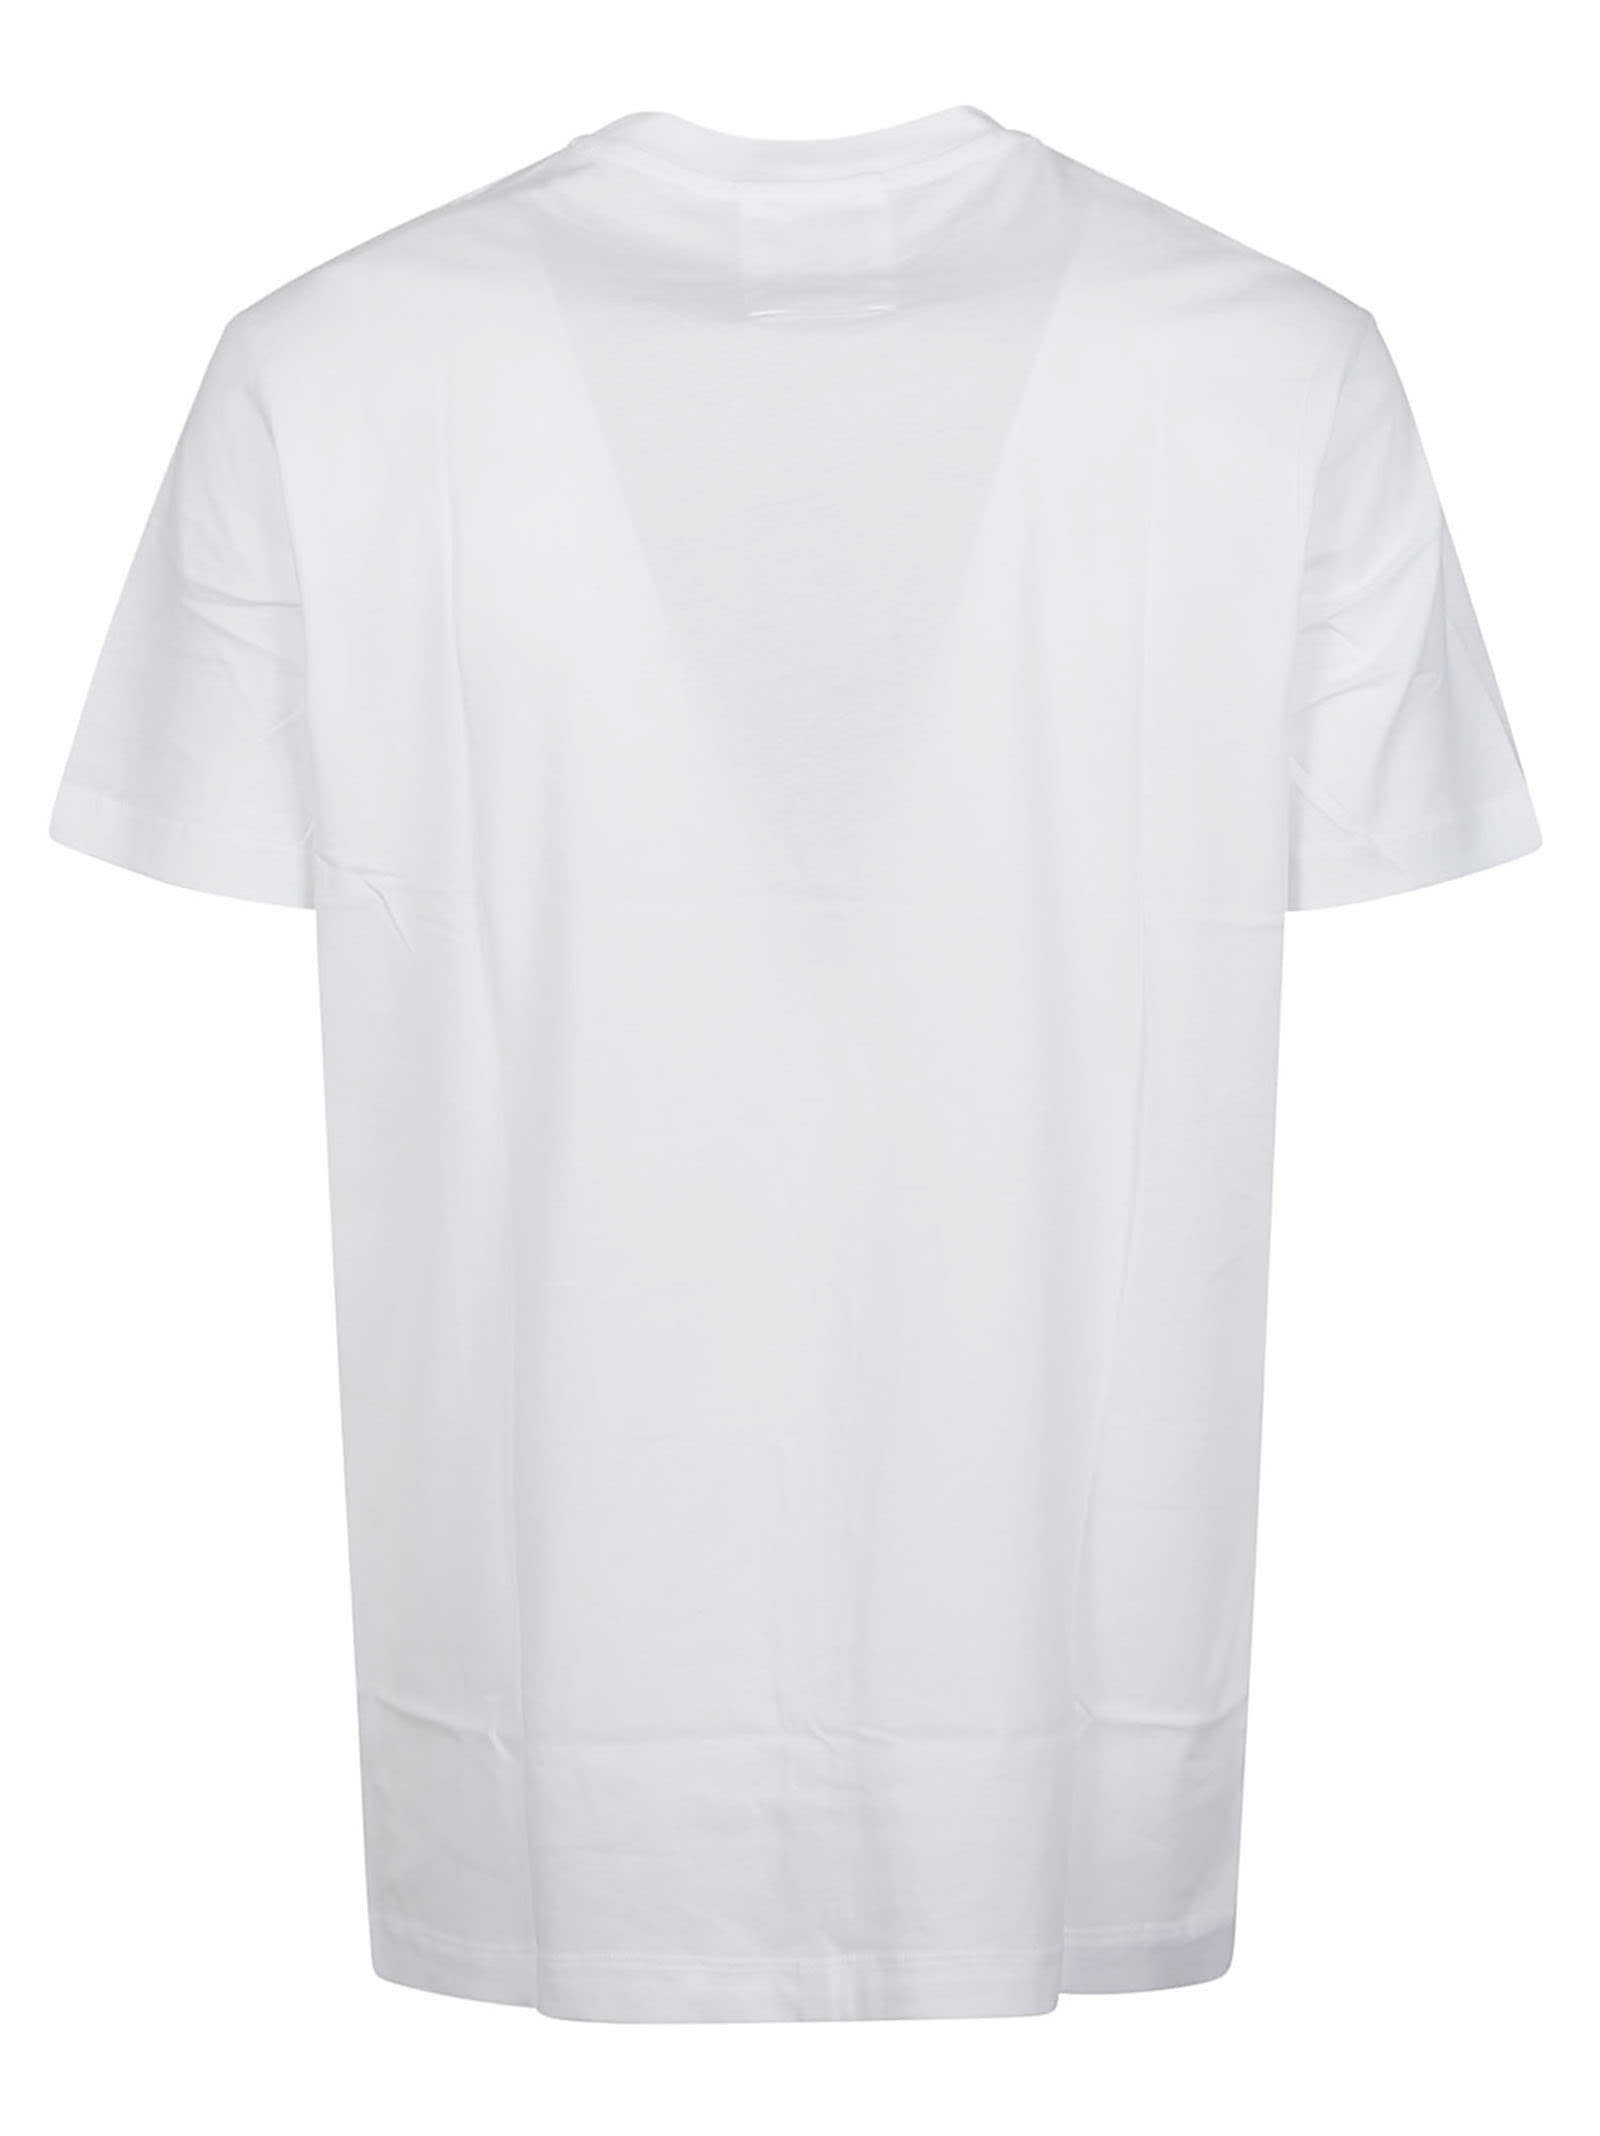 Shop Emporio Armani T-shirt In Bianco Ottico